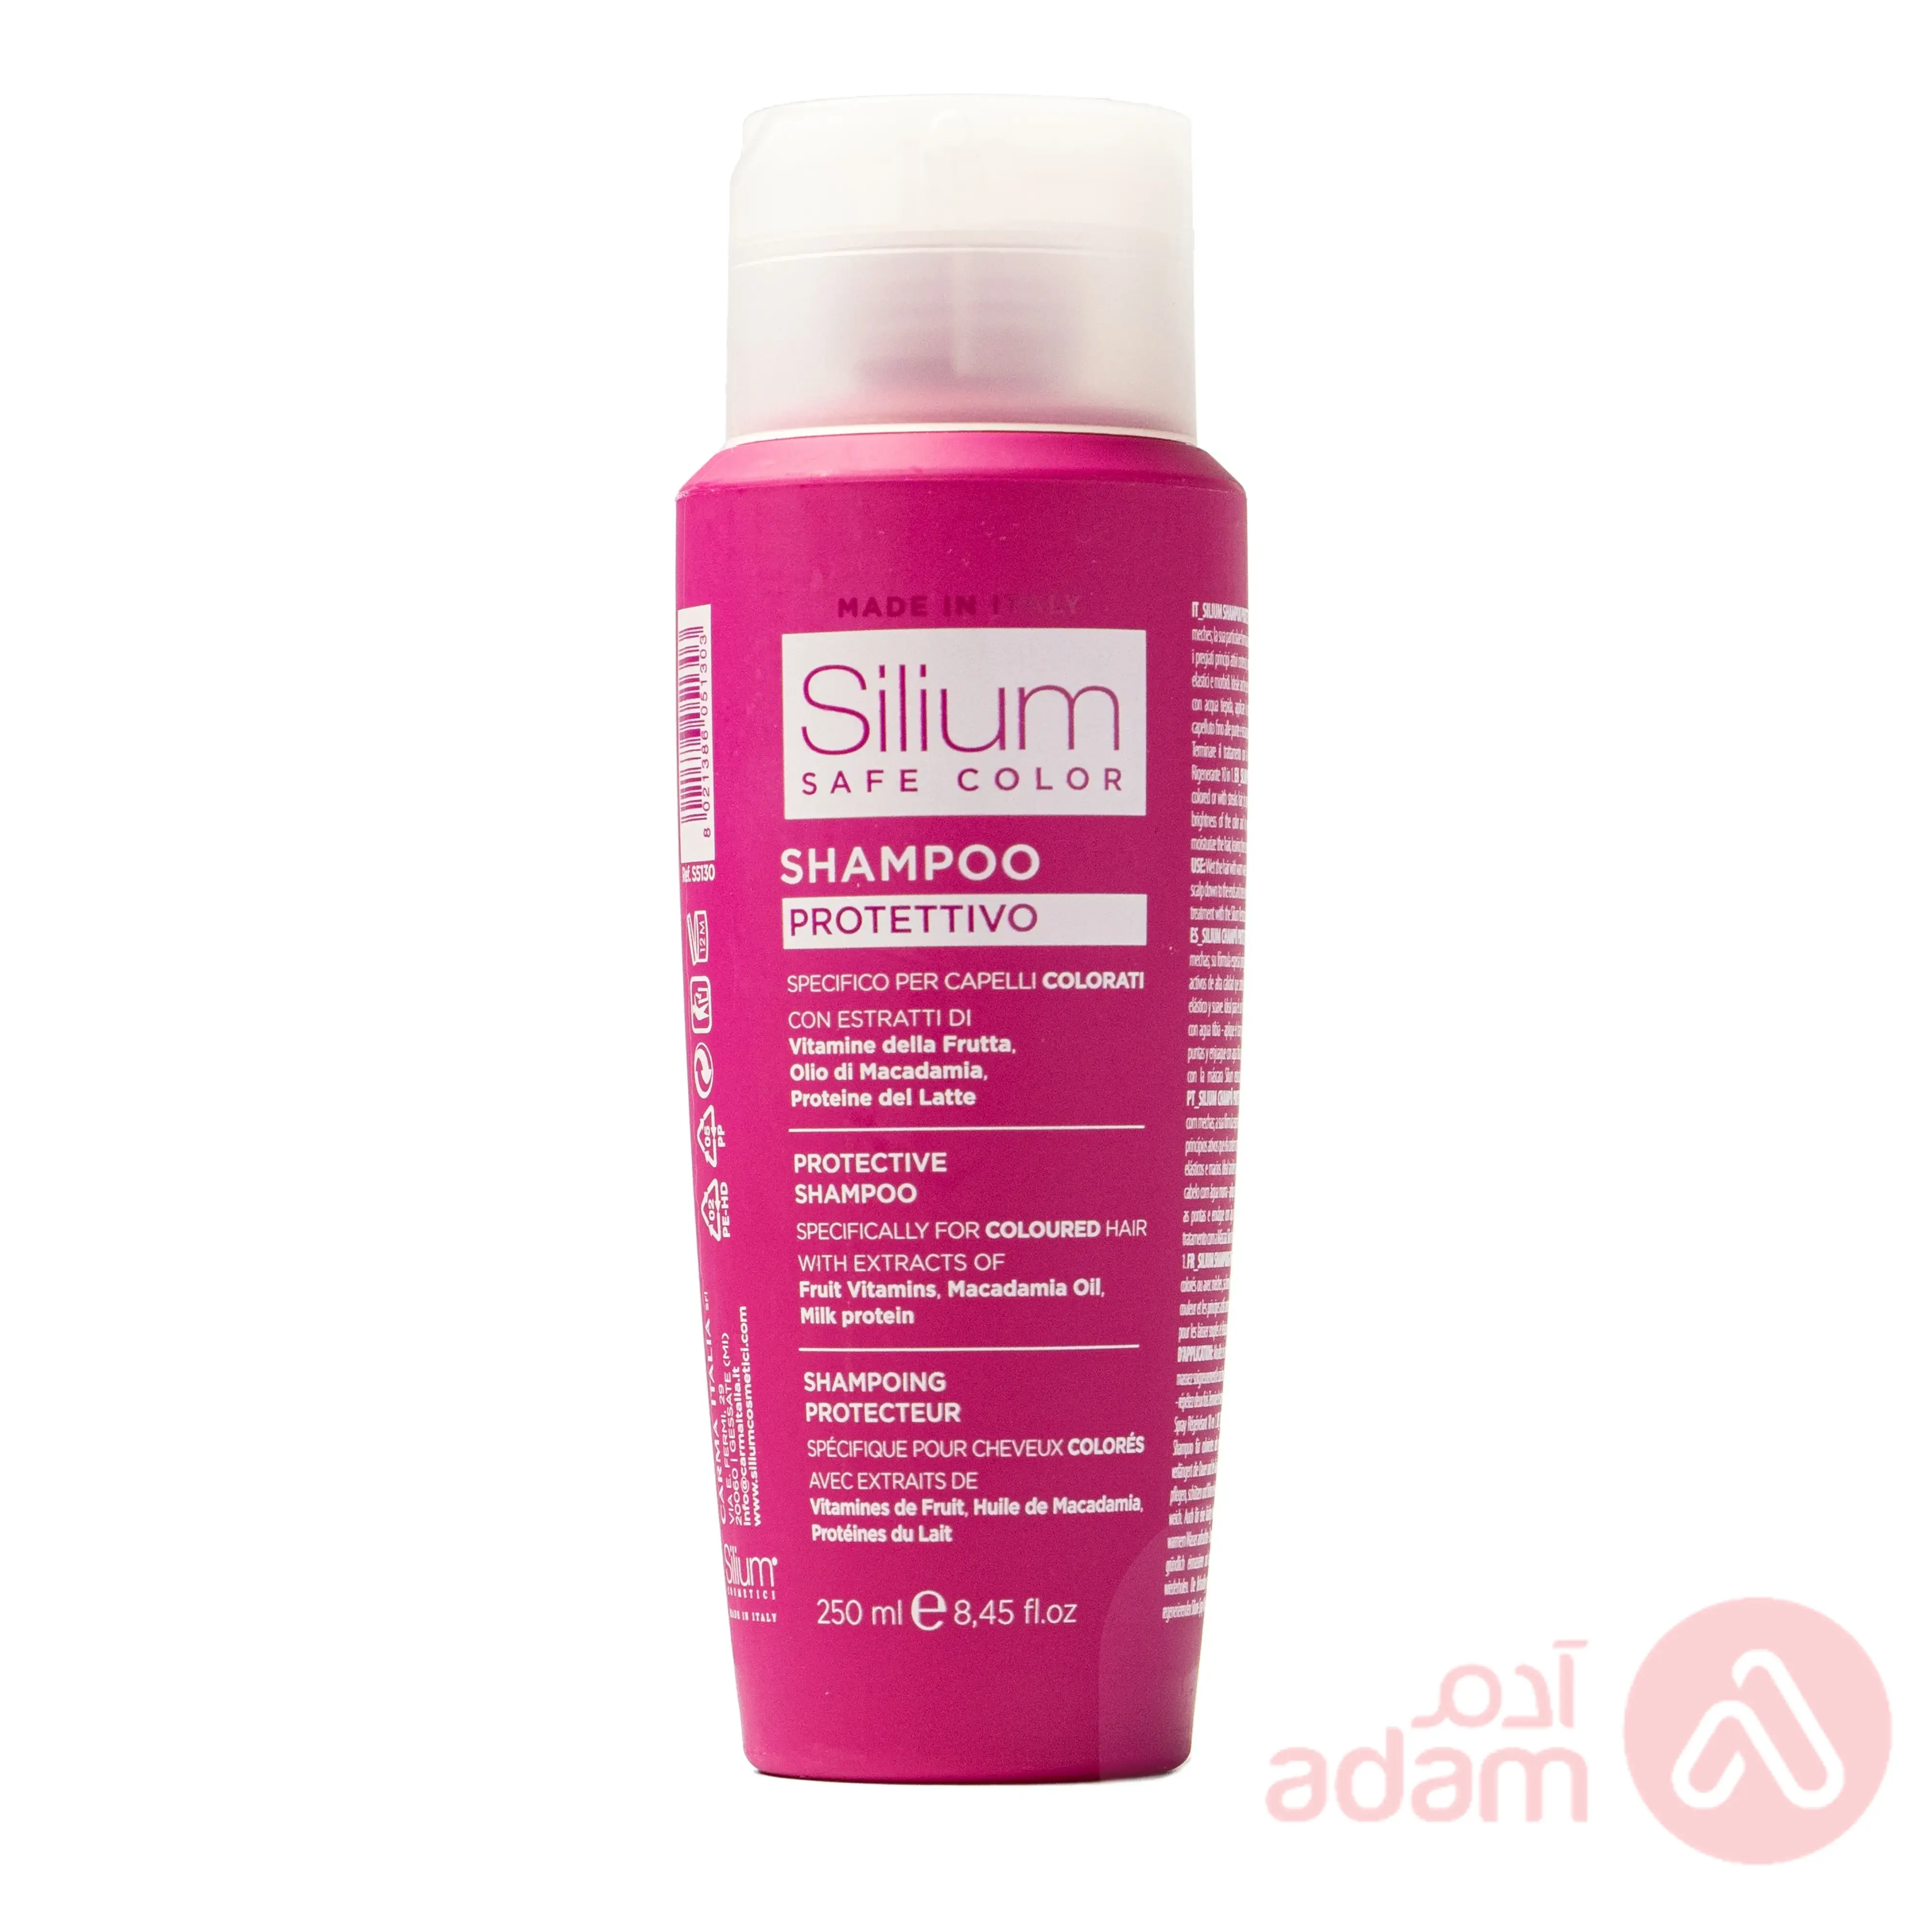 Silium Shampoo Safe Color | 250Ml